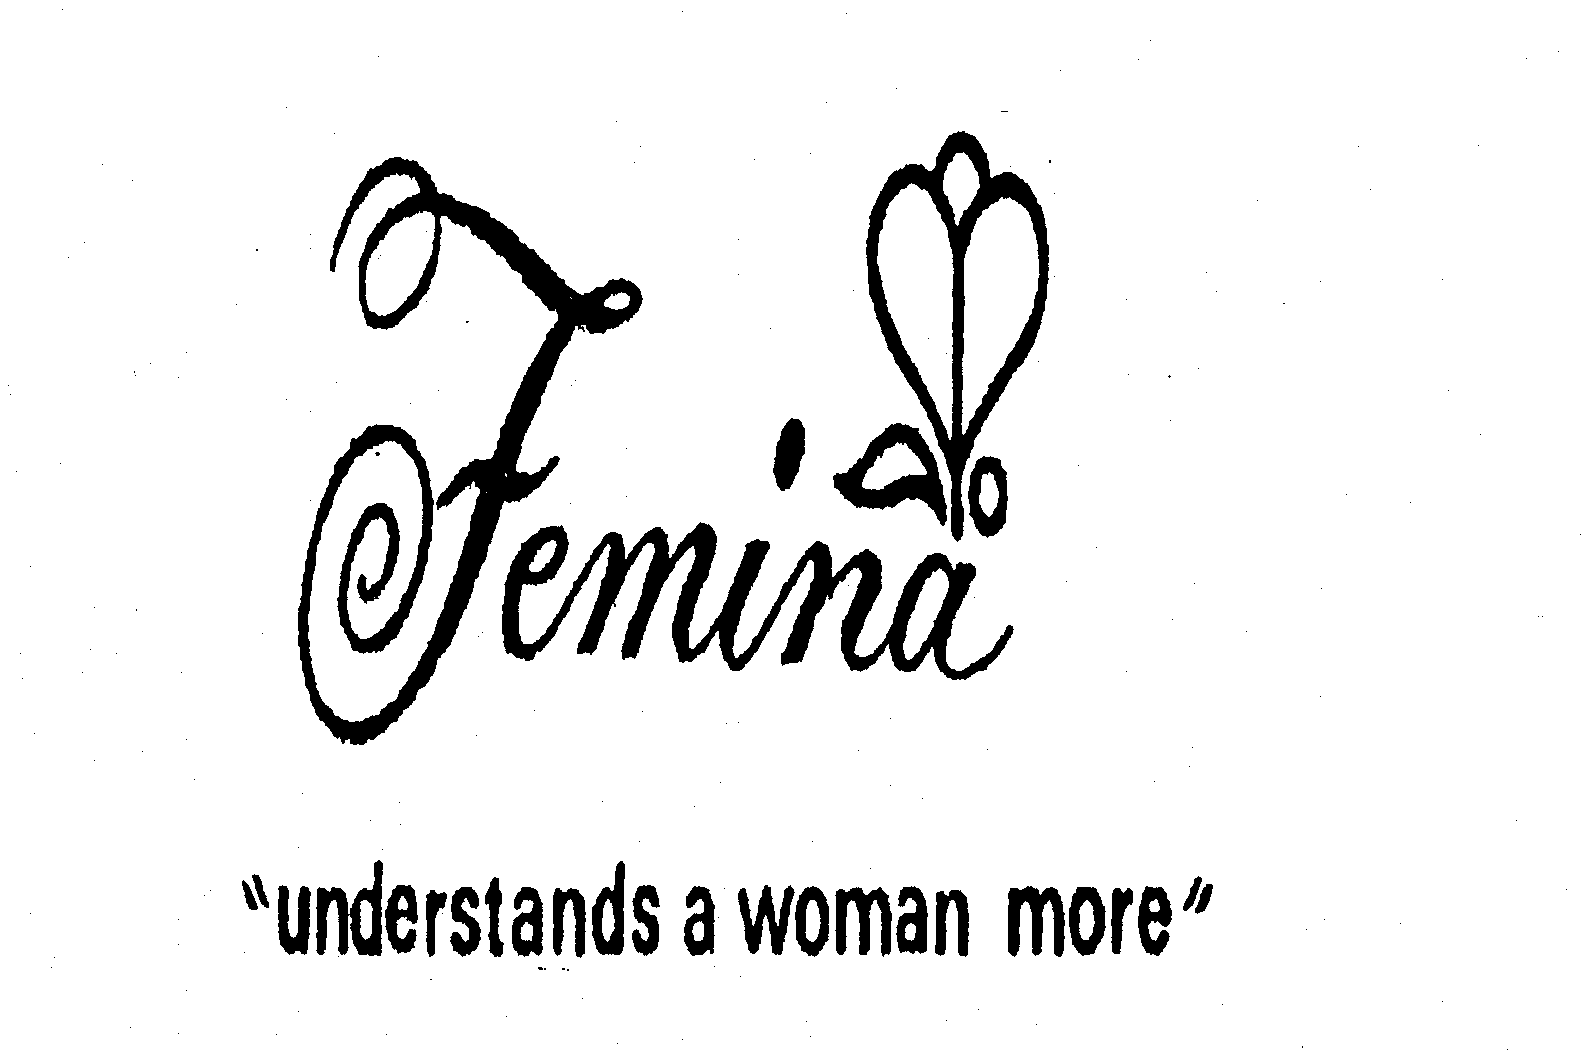  FEMINA "UNDERSTANDS A WOMAN MORE"